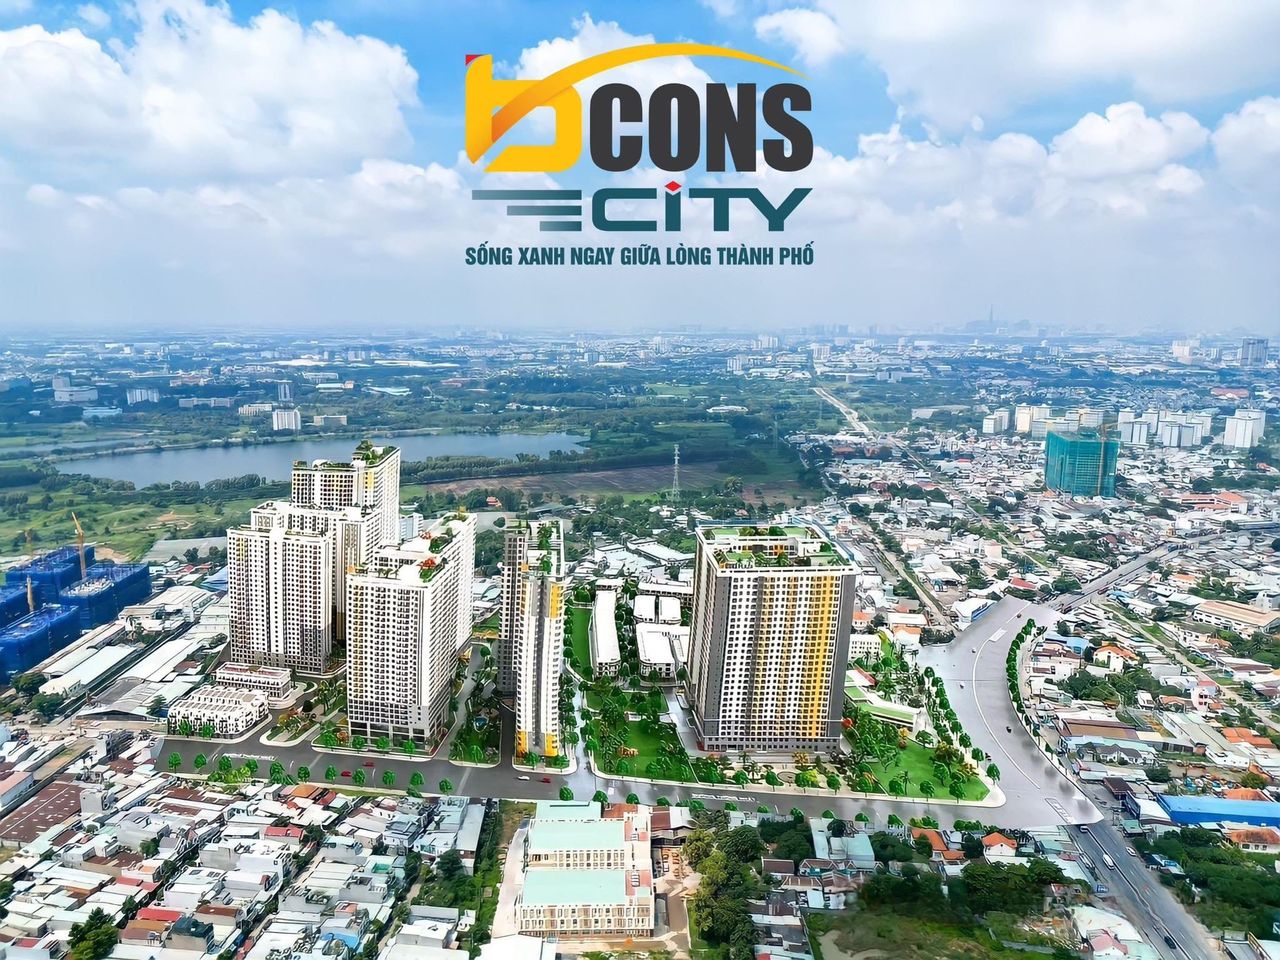 Phối cảnh tổng thể dự án Bcons City